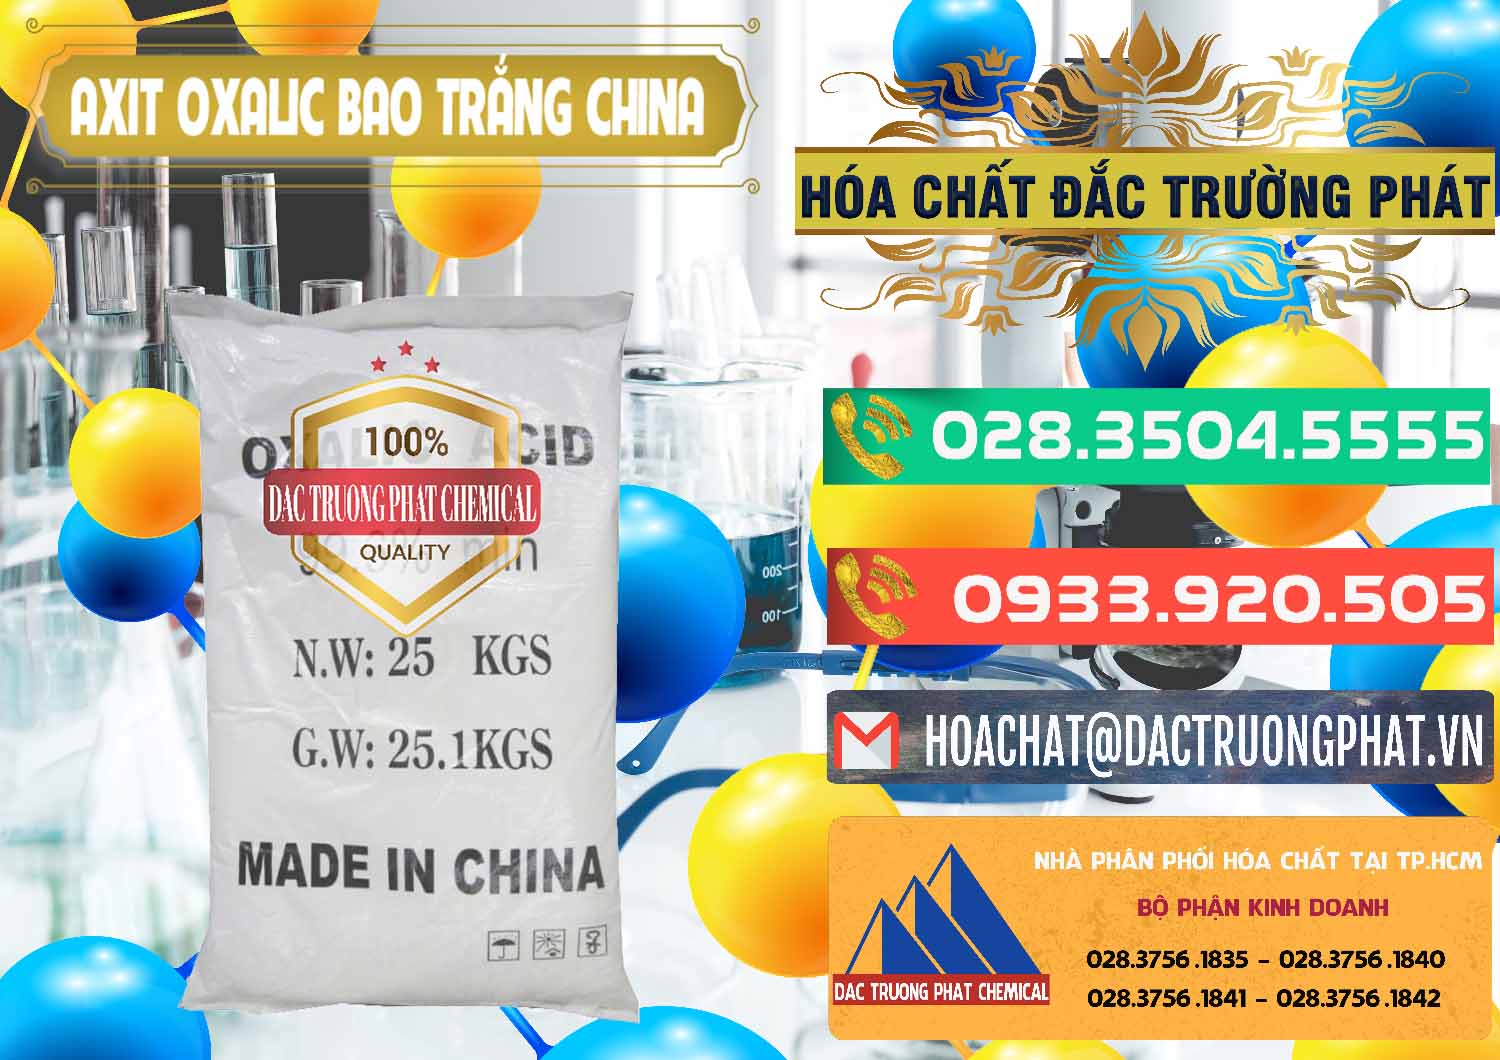 Công ty chuyên bán ( cung cấp ) Acid Oxalic – Axit Oxalic 99.6% Bao Trắng Trung Quốc China - 0270 - Nơi chuyên phân phối và cung ứng hóa chất tại TP.HCM - congtyhoachat.com.vn